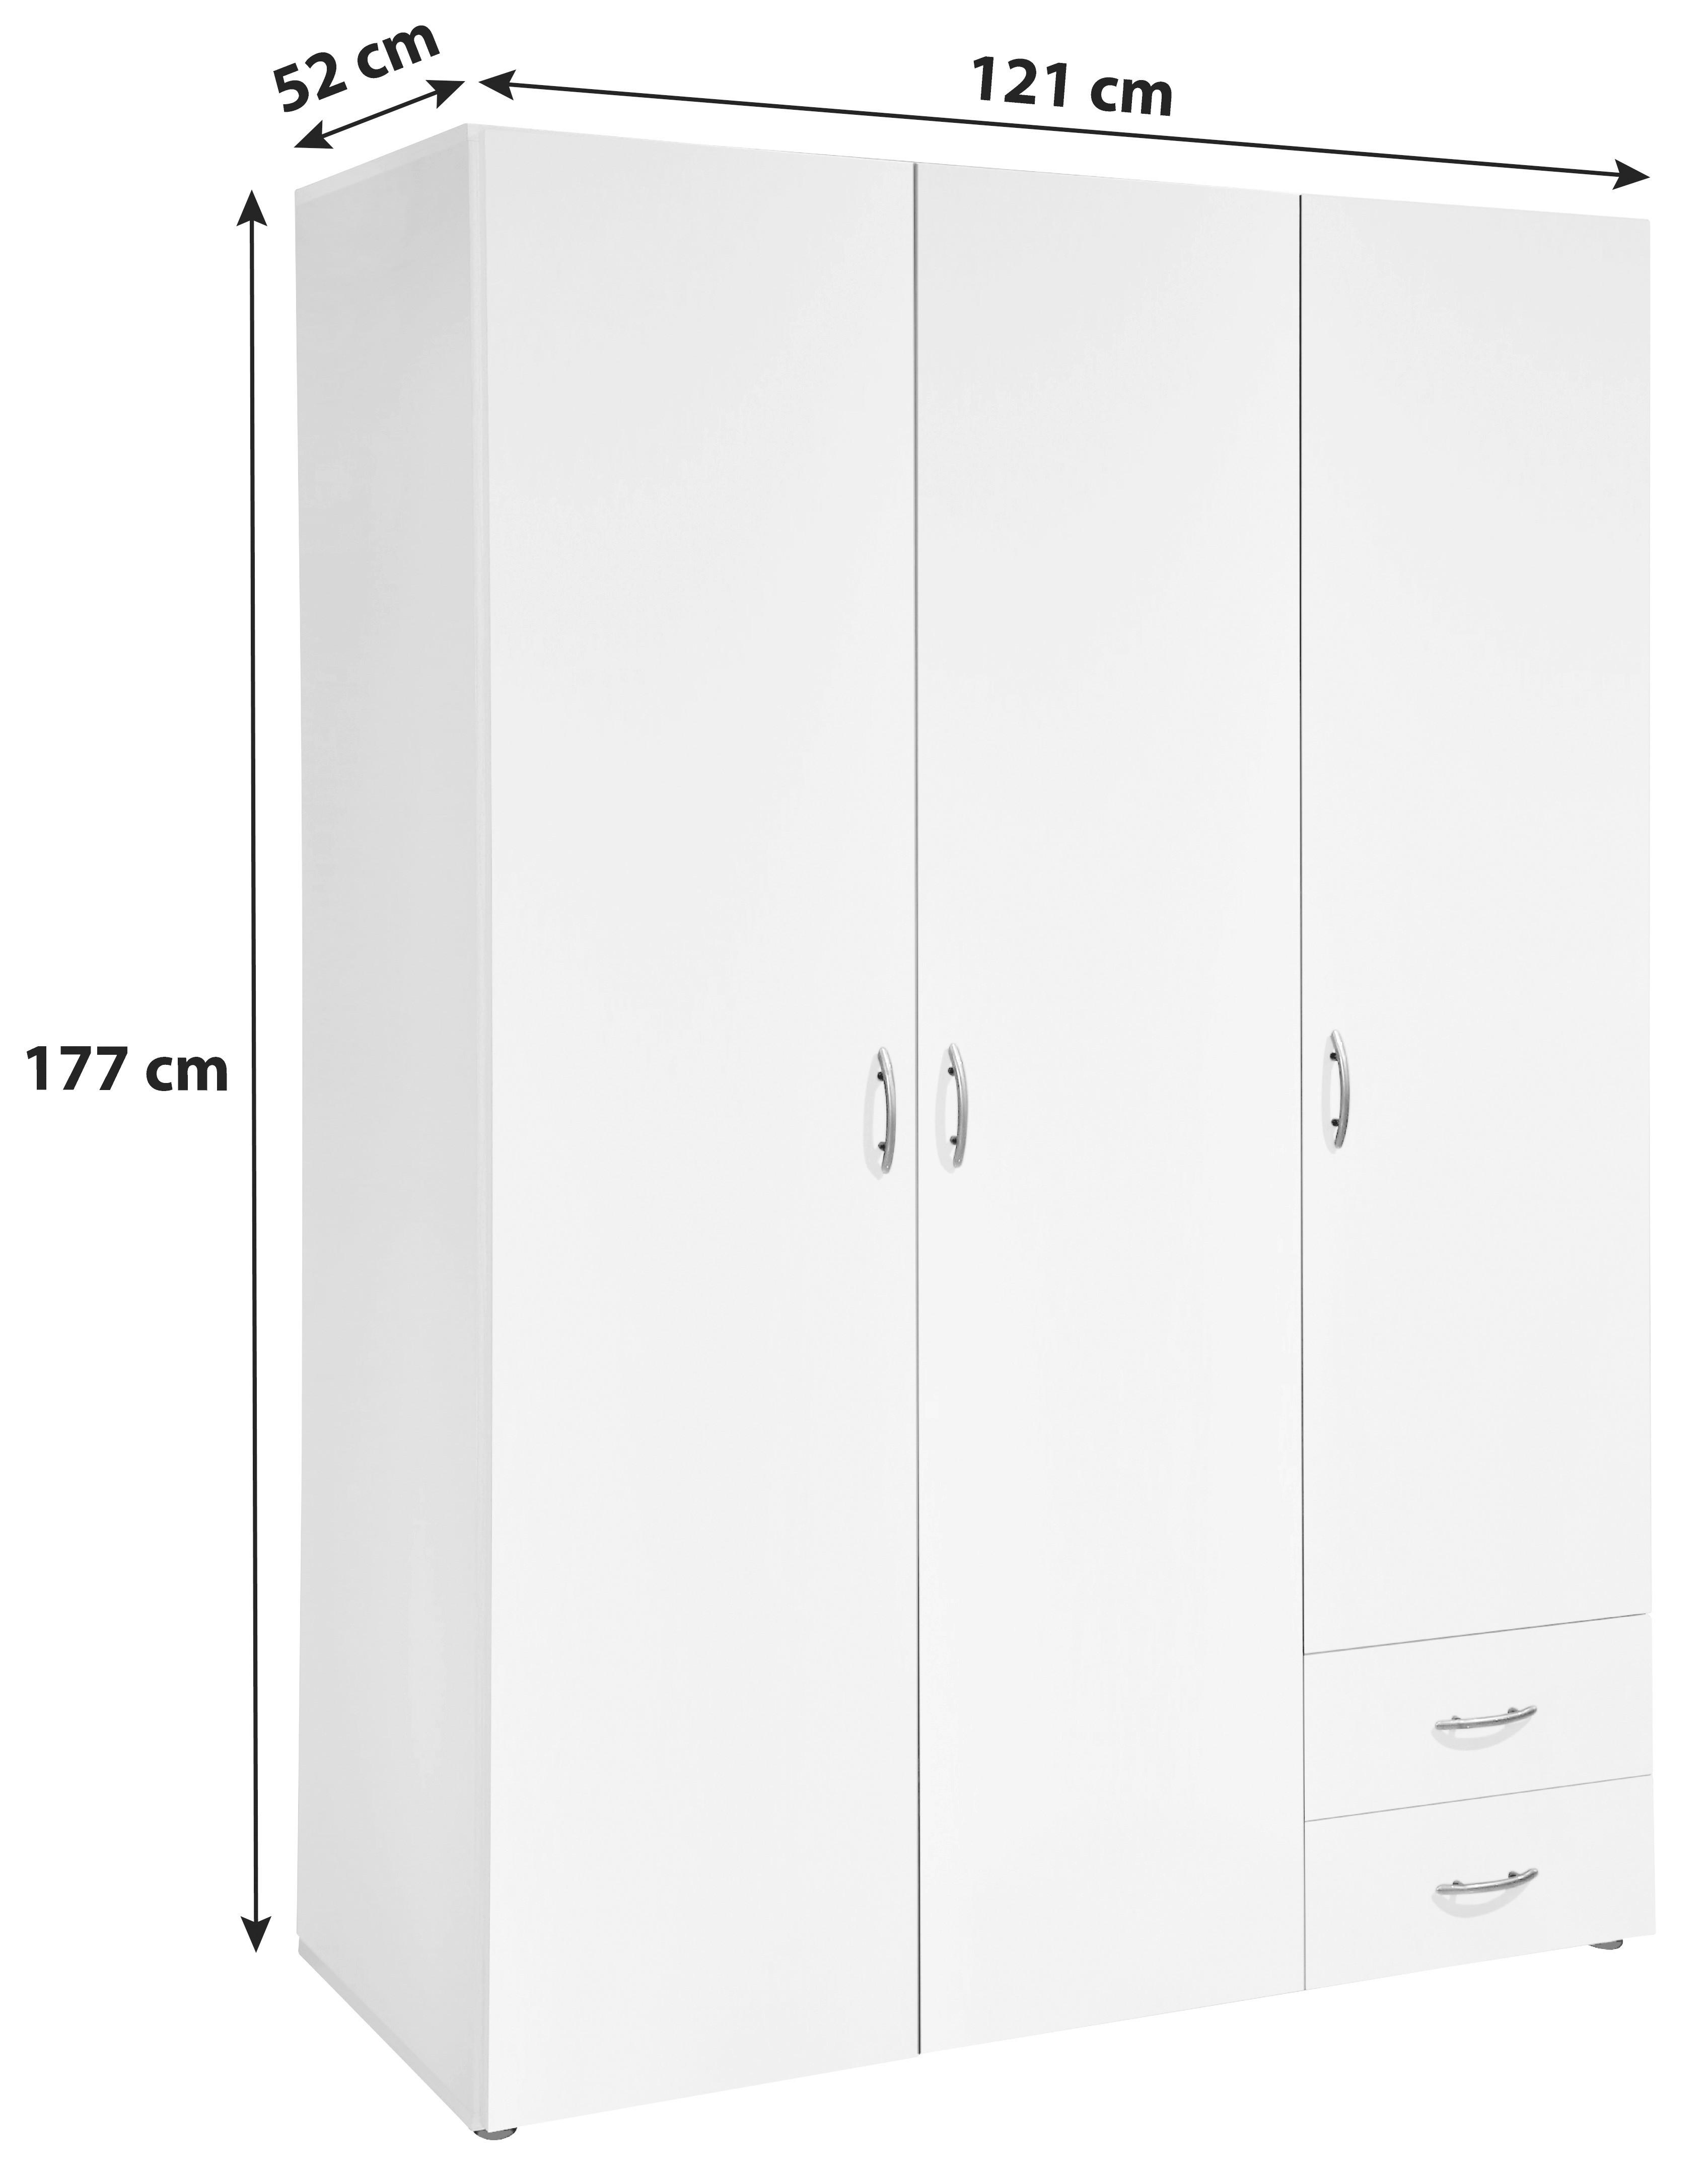 DREHTÜRENSCHRANK 3-türig Weiß  - Eichefarben/Alufarben, Design, Holzwerkstoff/Kunststoff (121/177/52cm) - Carryhome